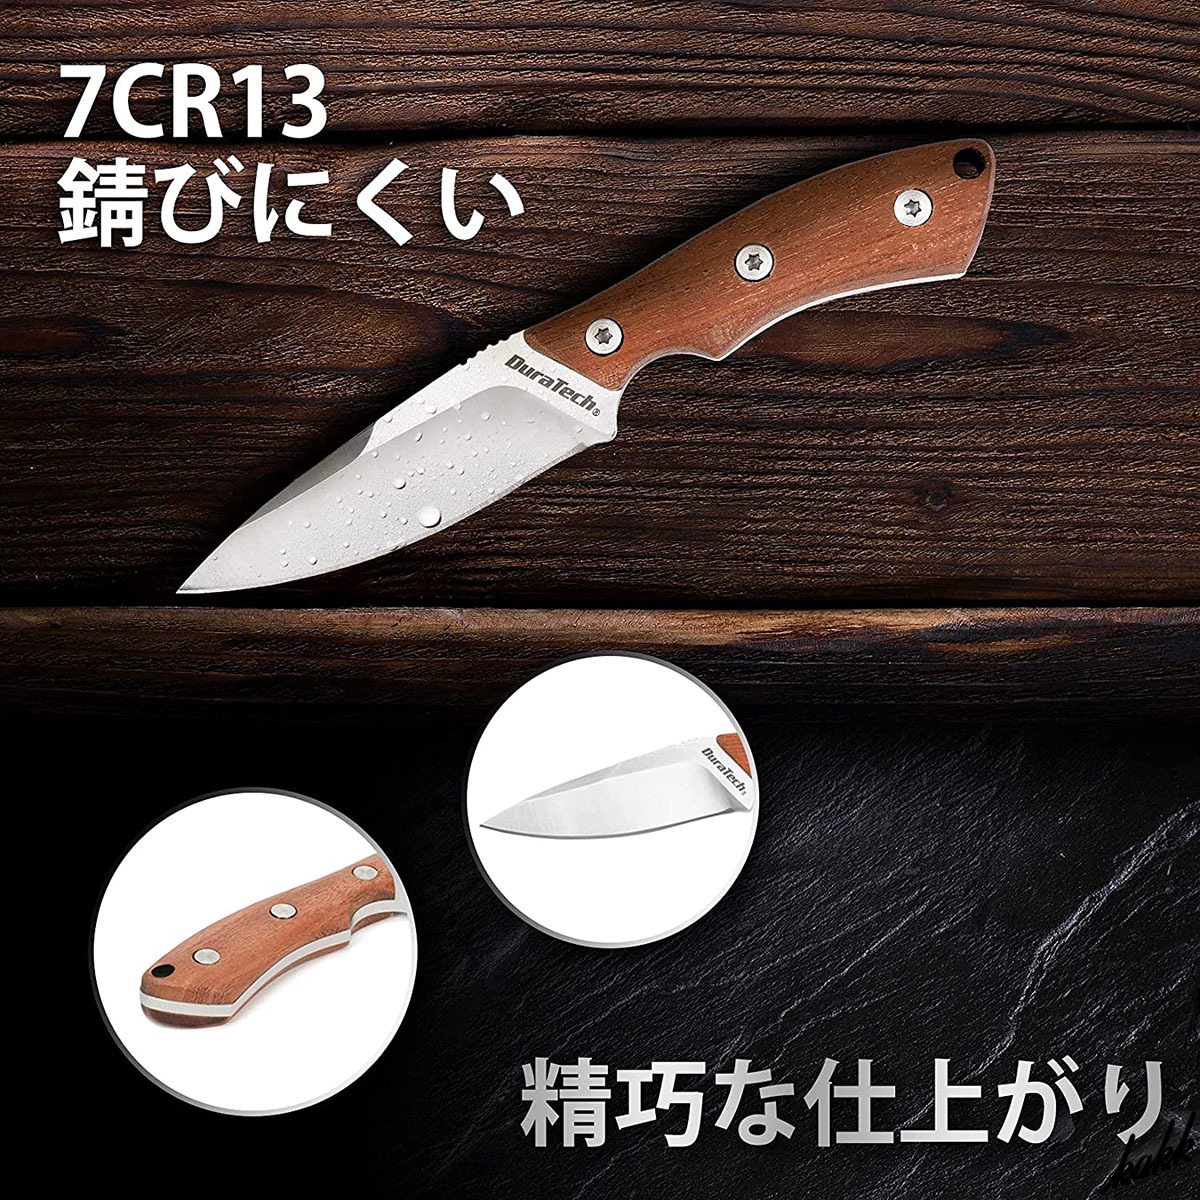 【軽量ネックナイフ】 シースナイフ コンパクト 木製グリップ ボールチェーン パラコード ステンレス鋼 サバイバル キャンプ